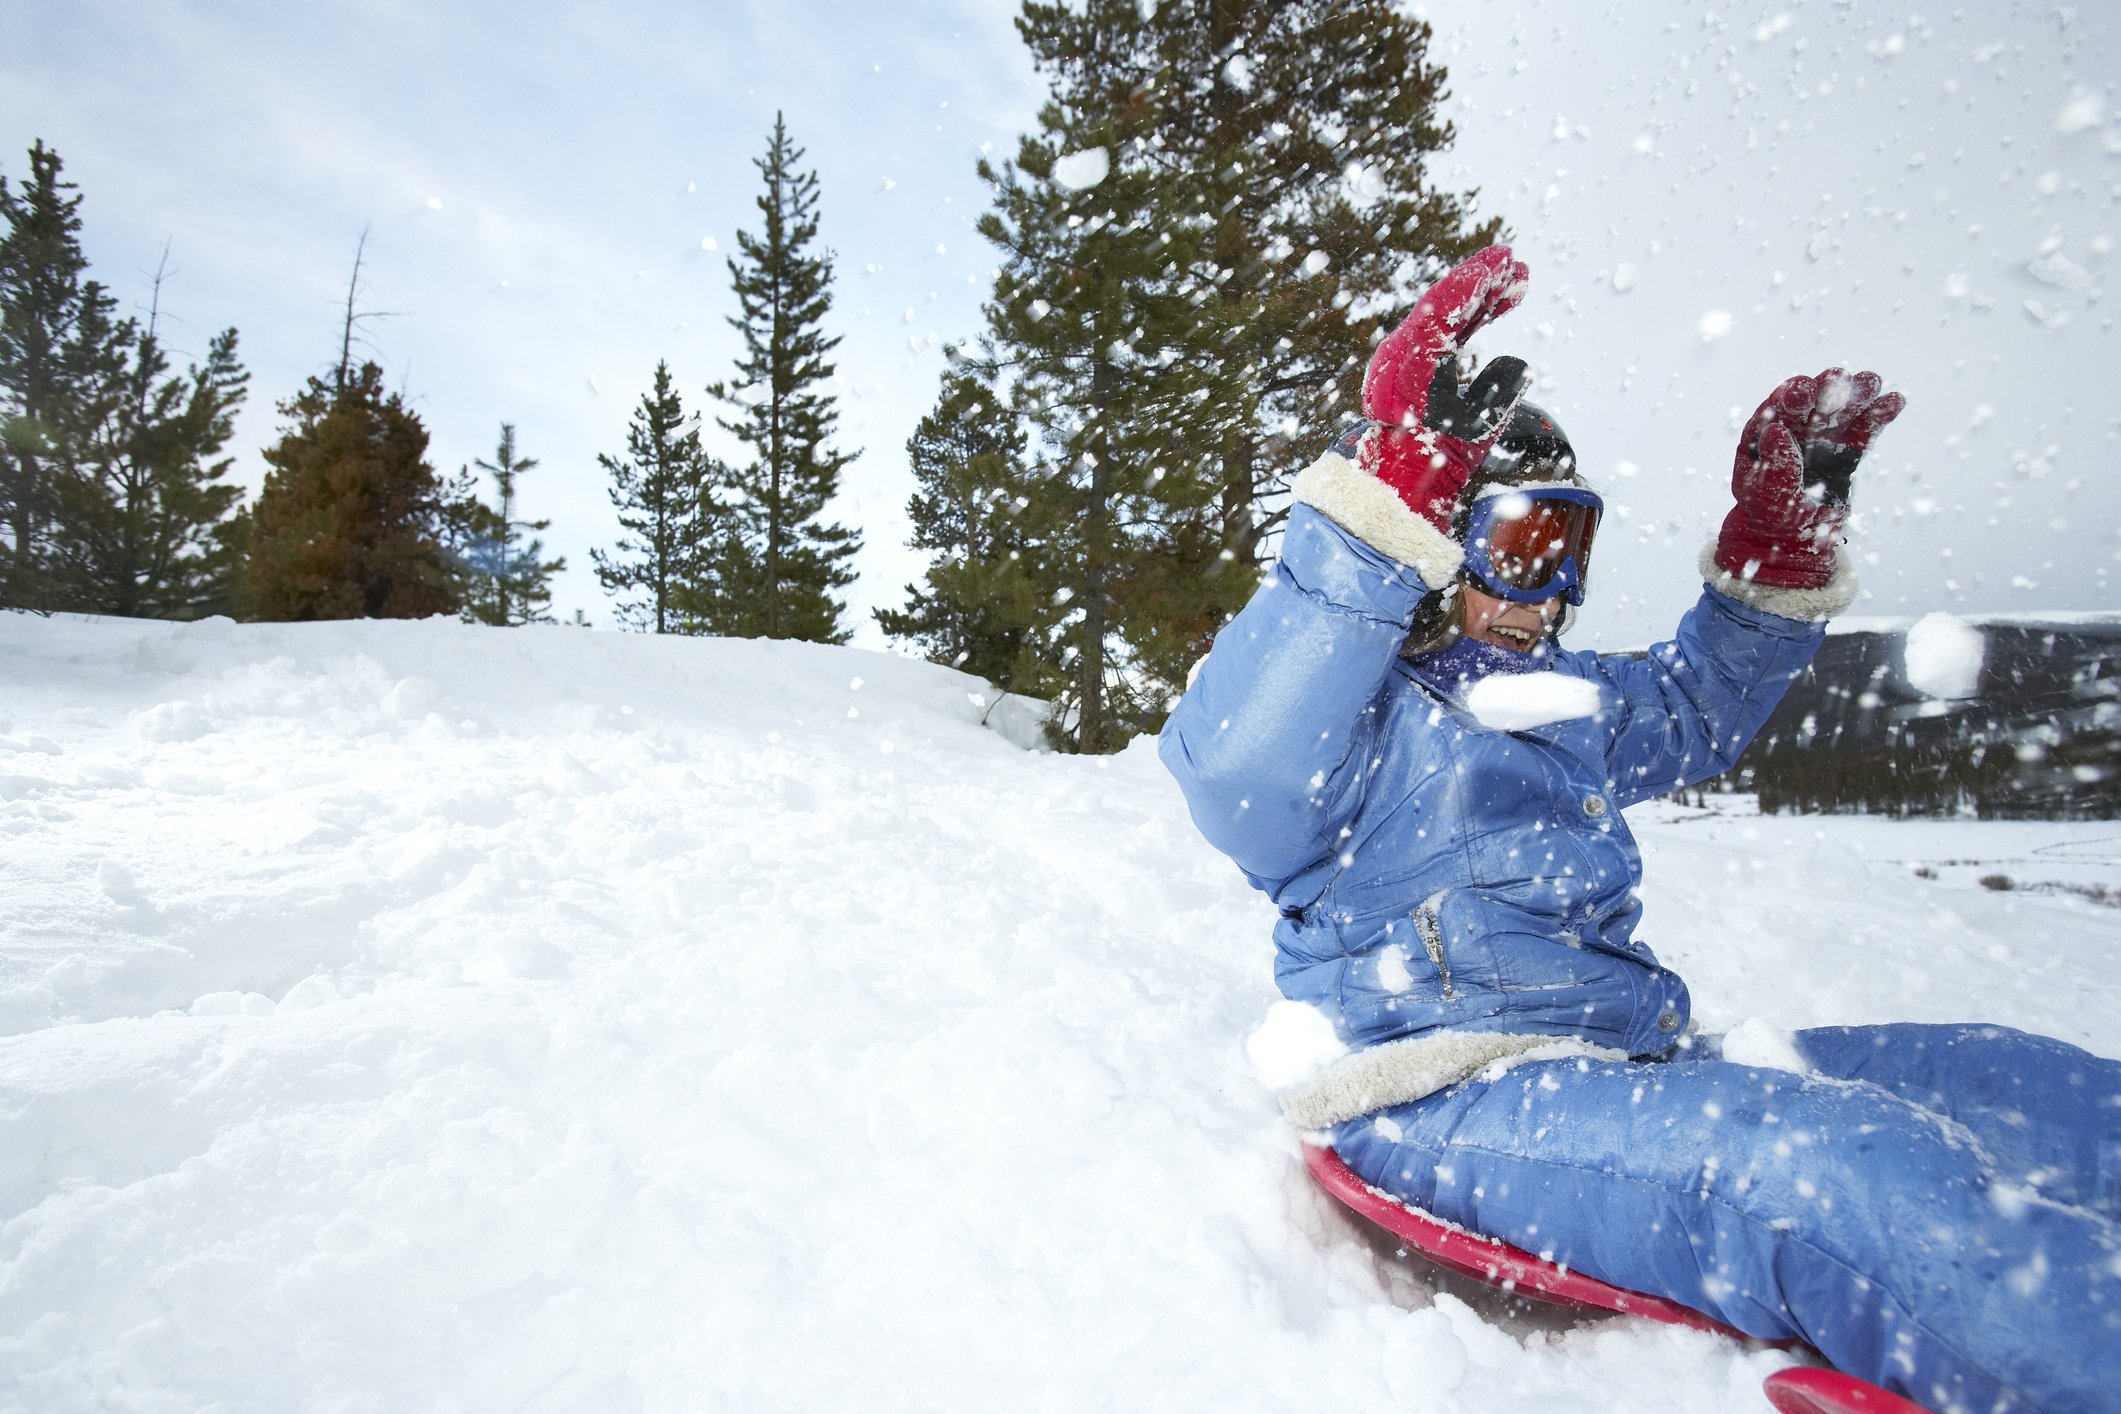 une femme pratiquant un sport d'hiver | source : Getty Images